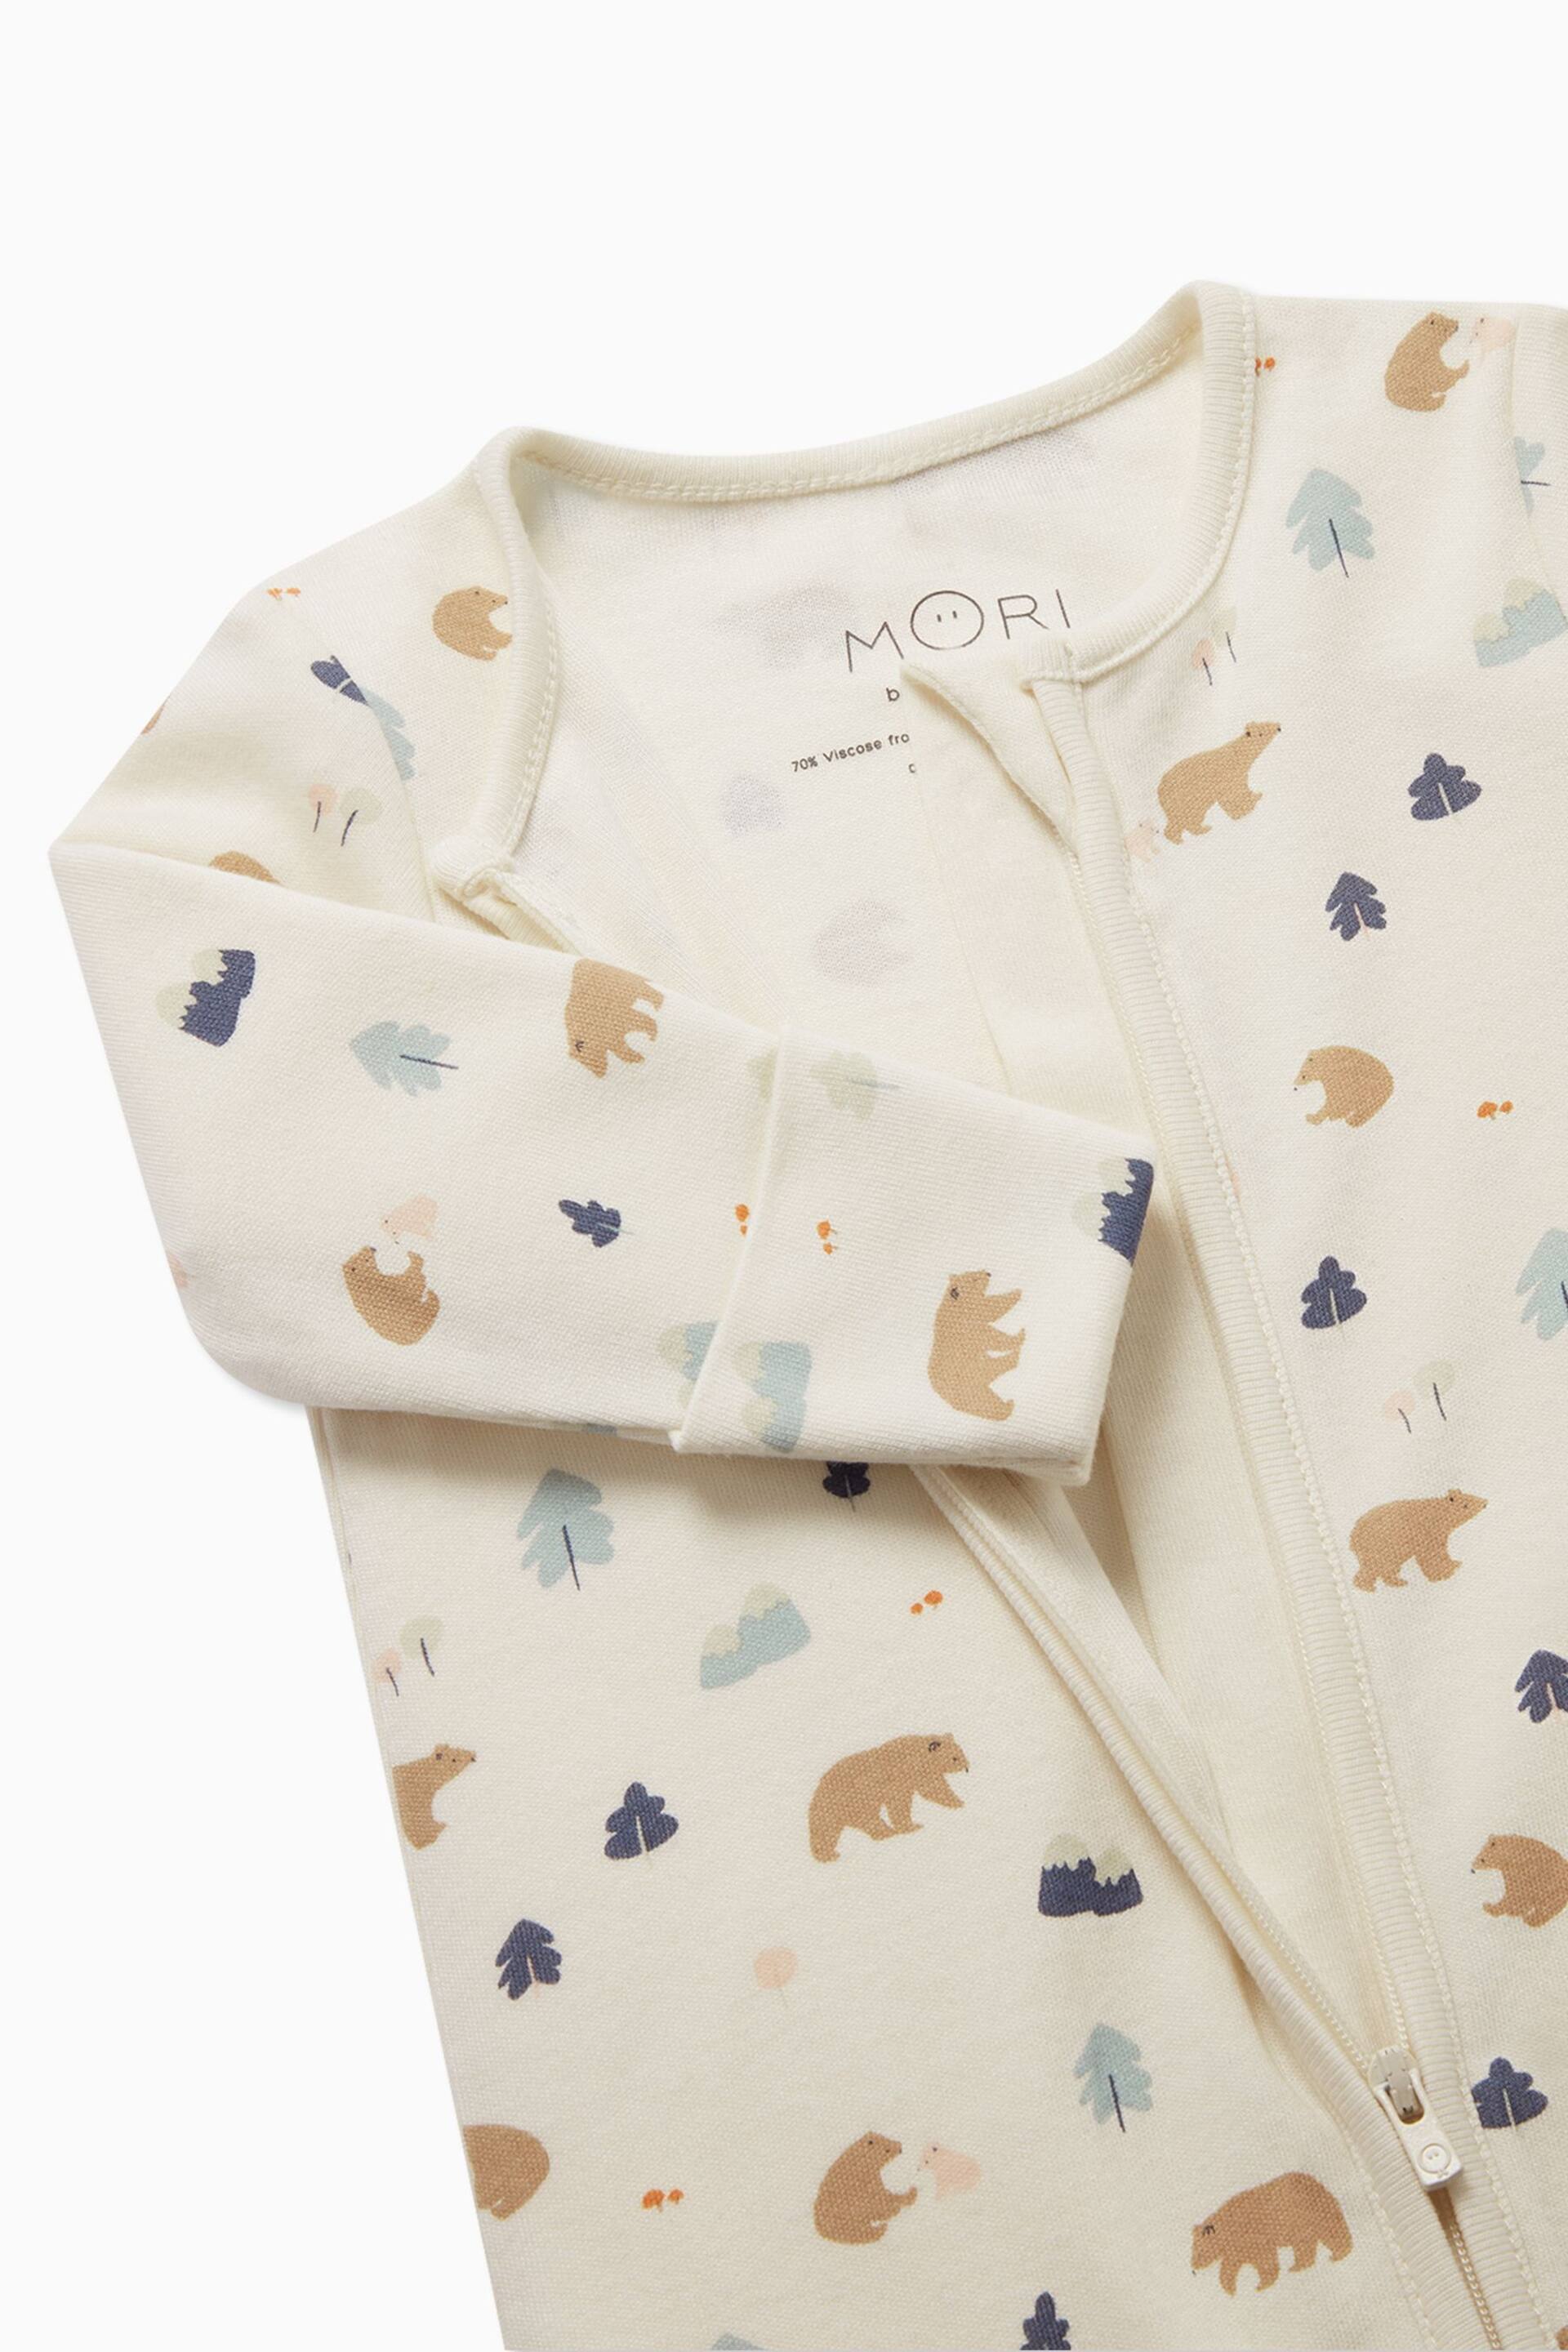 MORI Cream Organic Cotton & Bamboo Giraffe Print Zip Up Sleepsuit - Image 4 of 5